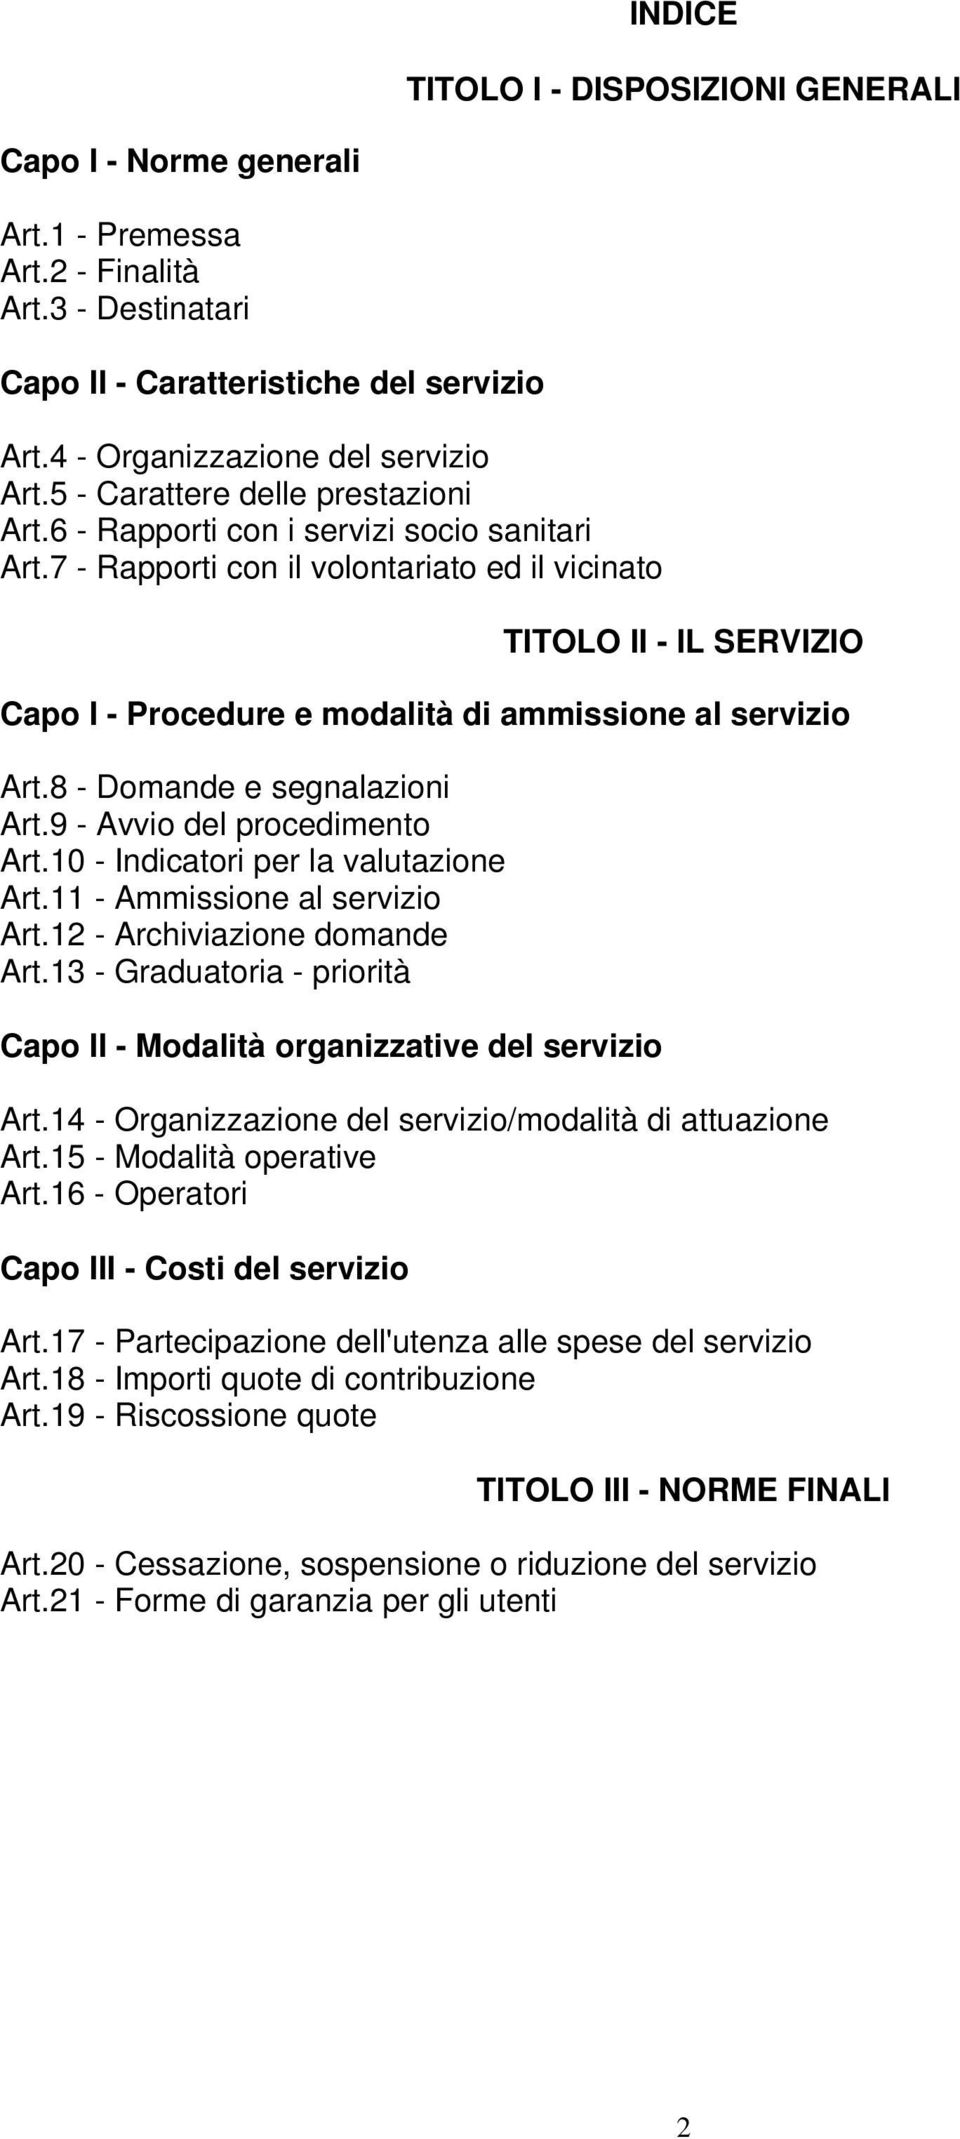 7 - Rapporti con il volontariato ed il vicinato TITOLO II - IL SERVIZIO Capo I - Procedure e modalità di ammissione al servizio Art.8 - Domande e segnalazioni Art.9 - Avvio del procedimento Art.